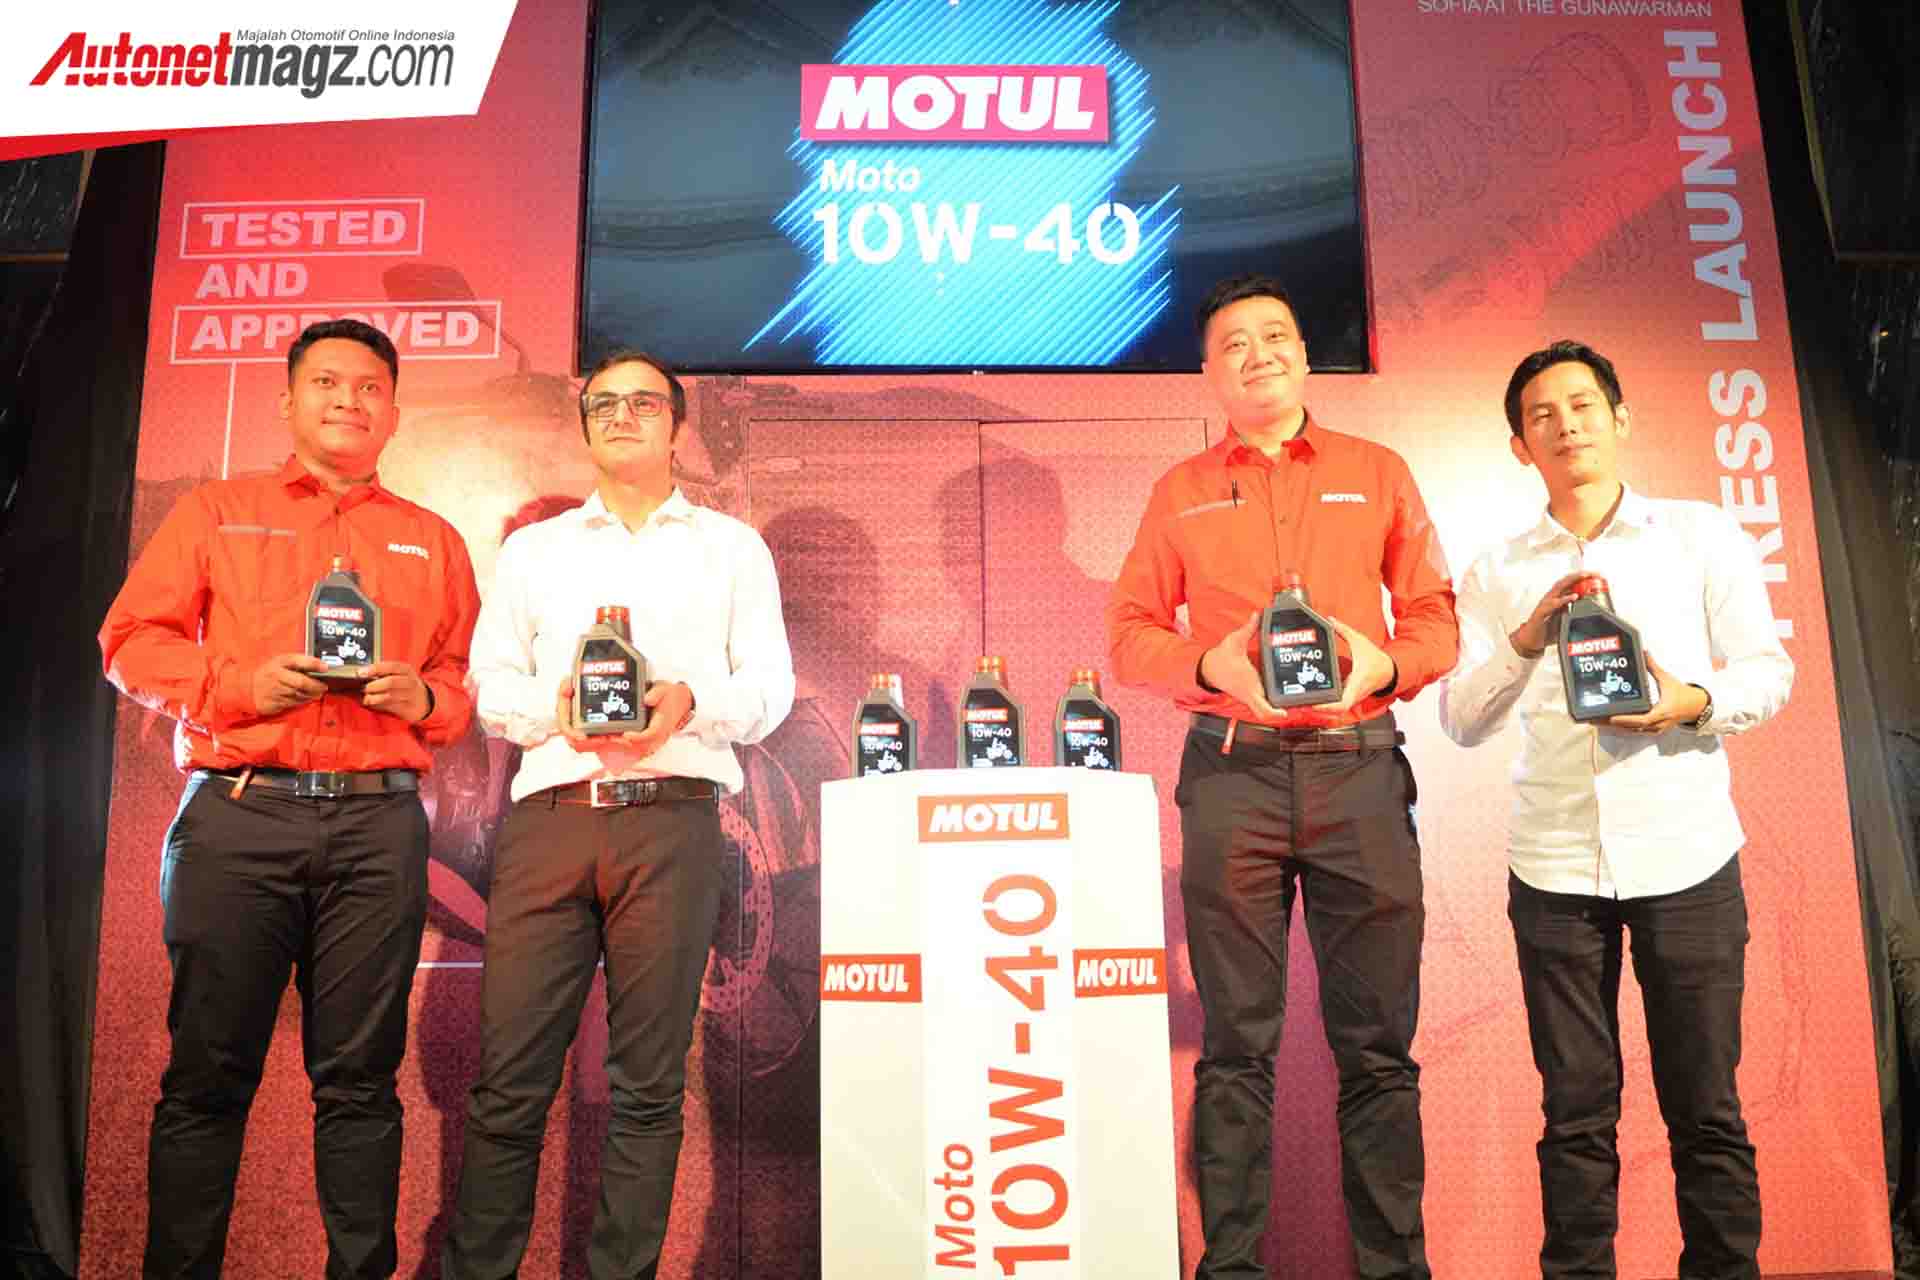 Berita, Launching Motul Moto 4T 10W-40: Motul Perkenalkan Pelumas Motor Baru Dengan Harga Terjangkau